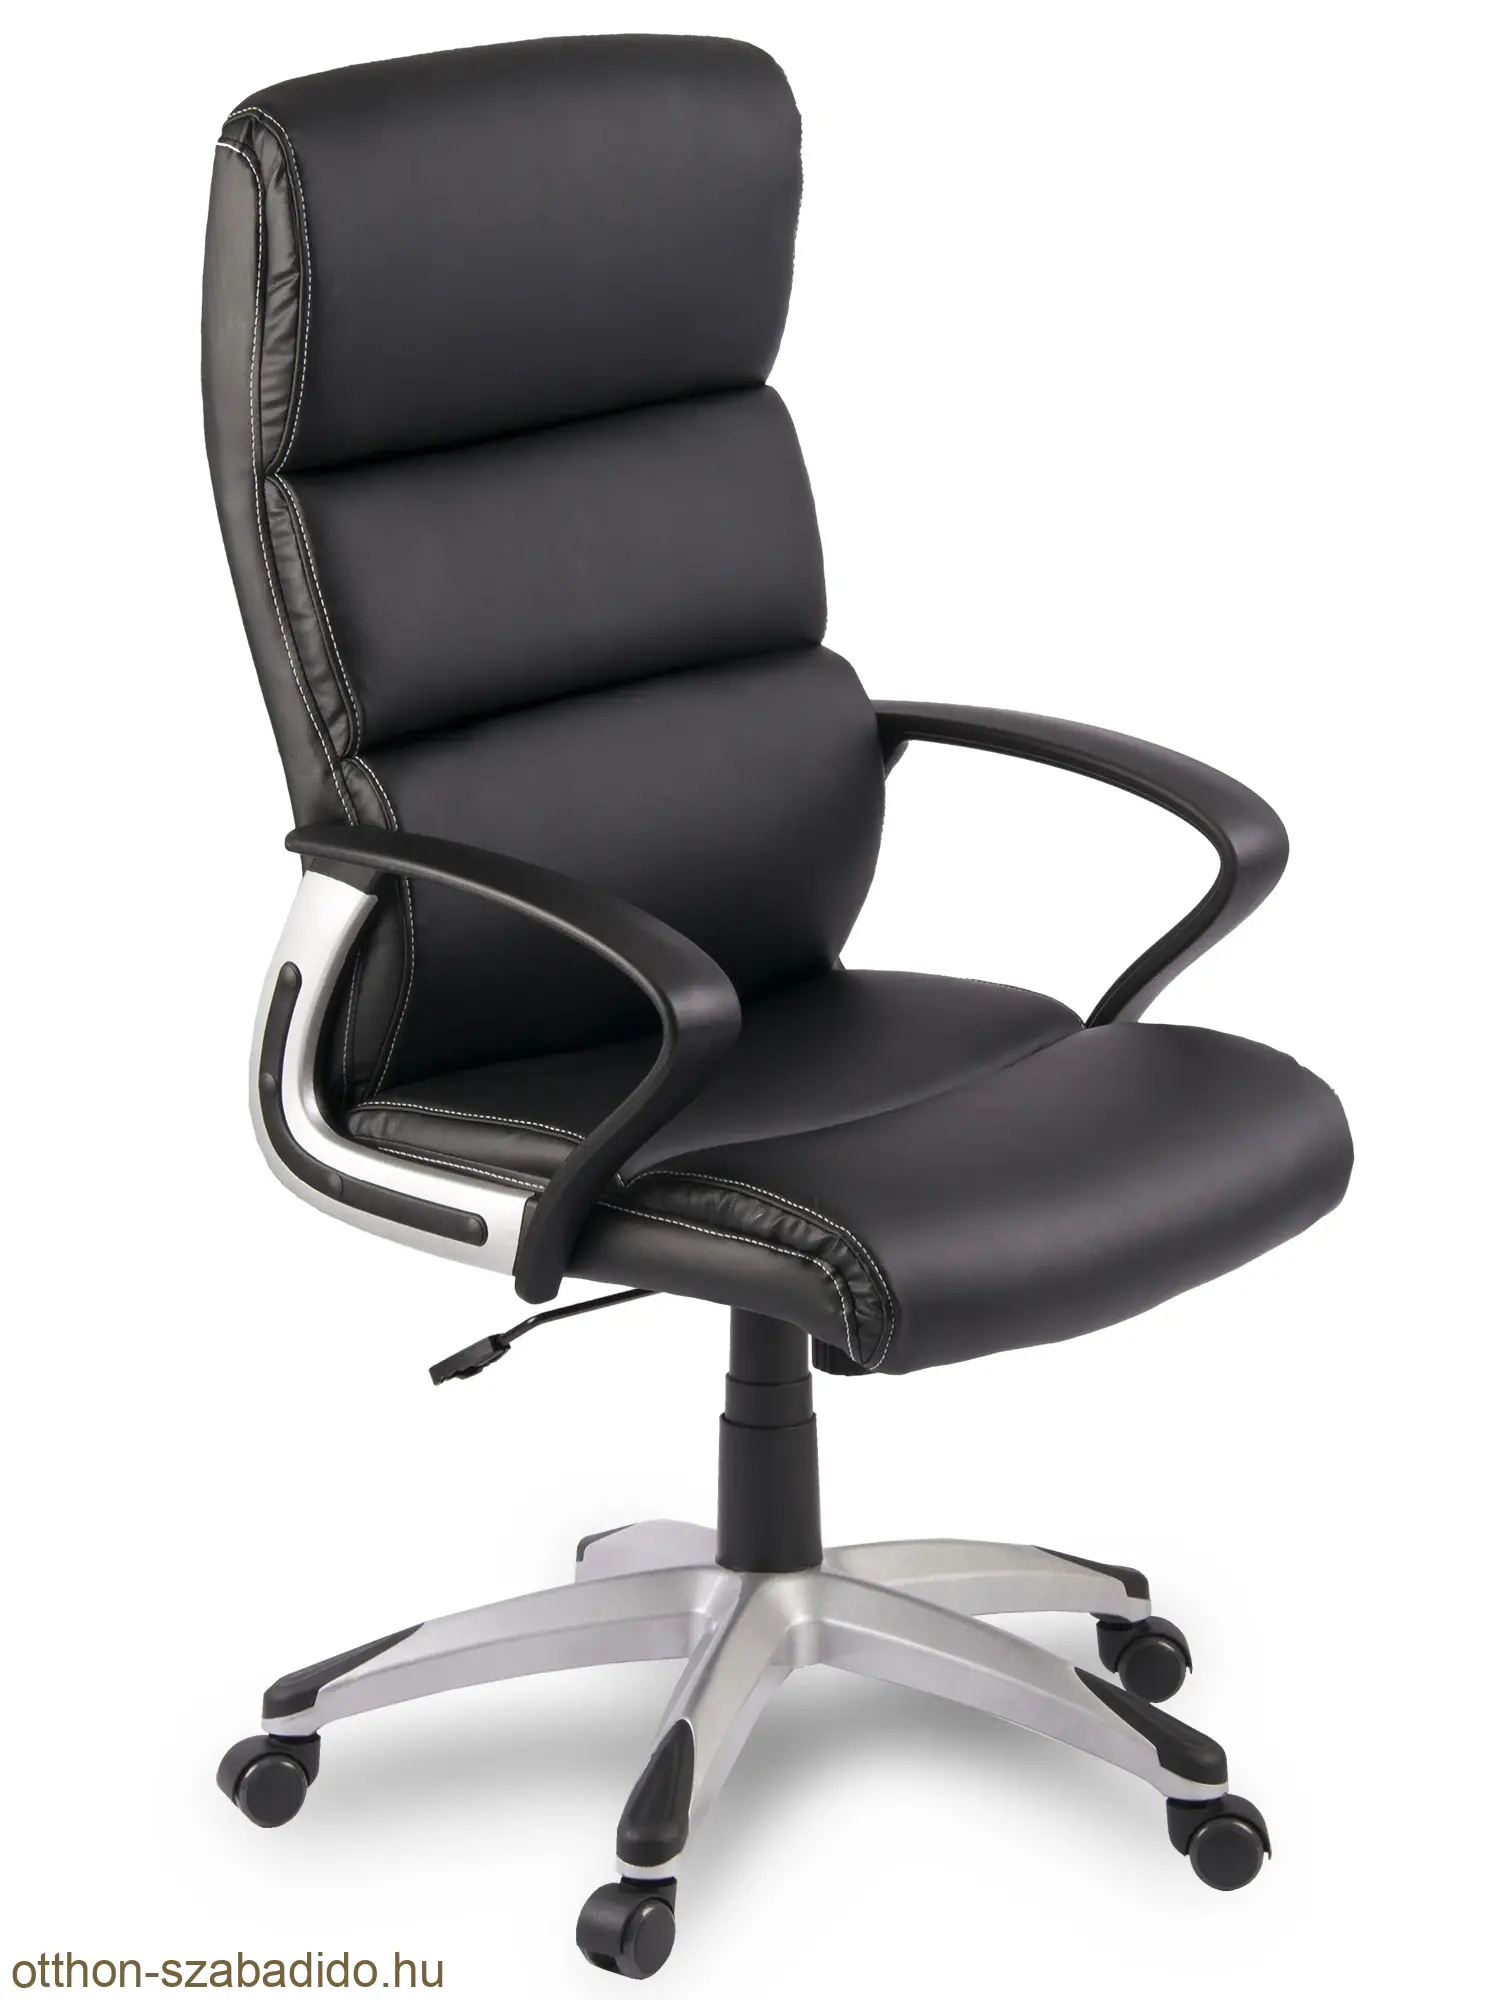 SOFOTEL forgó irodai szék EG-228 fekete